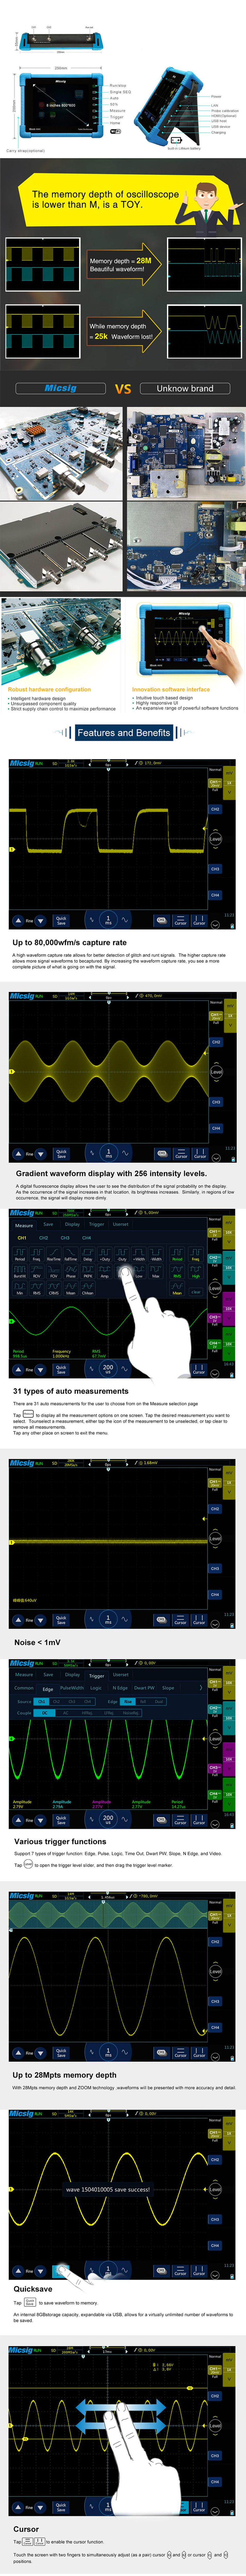 Micsig-TO1102-Digital-Tablet-Oscilloscope-100MHz-2CH-28Mpts-Automotive-Diagnostic-Touchscreen-Digita-1618225